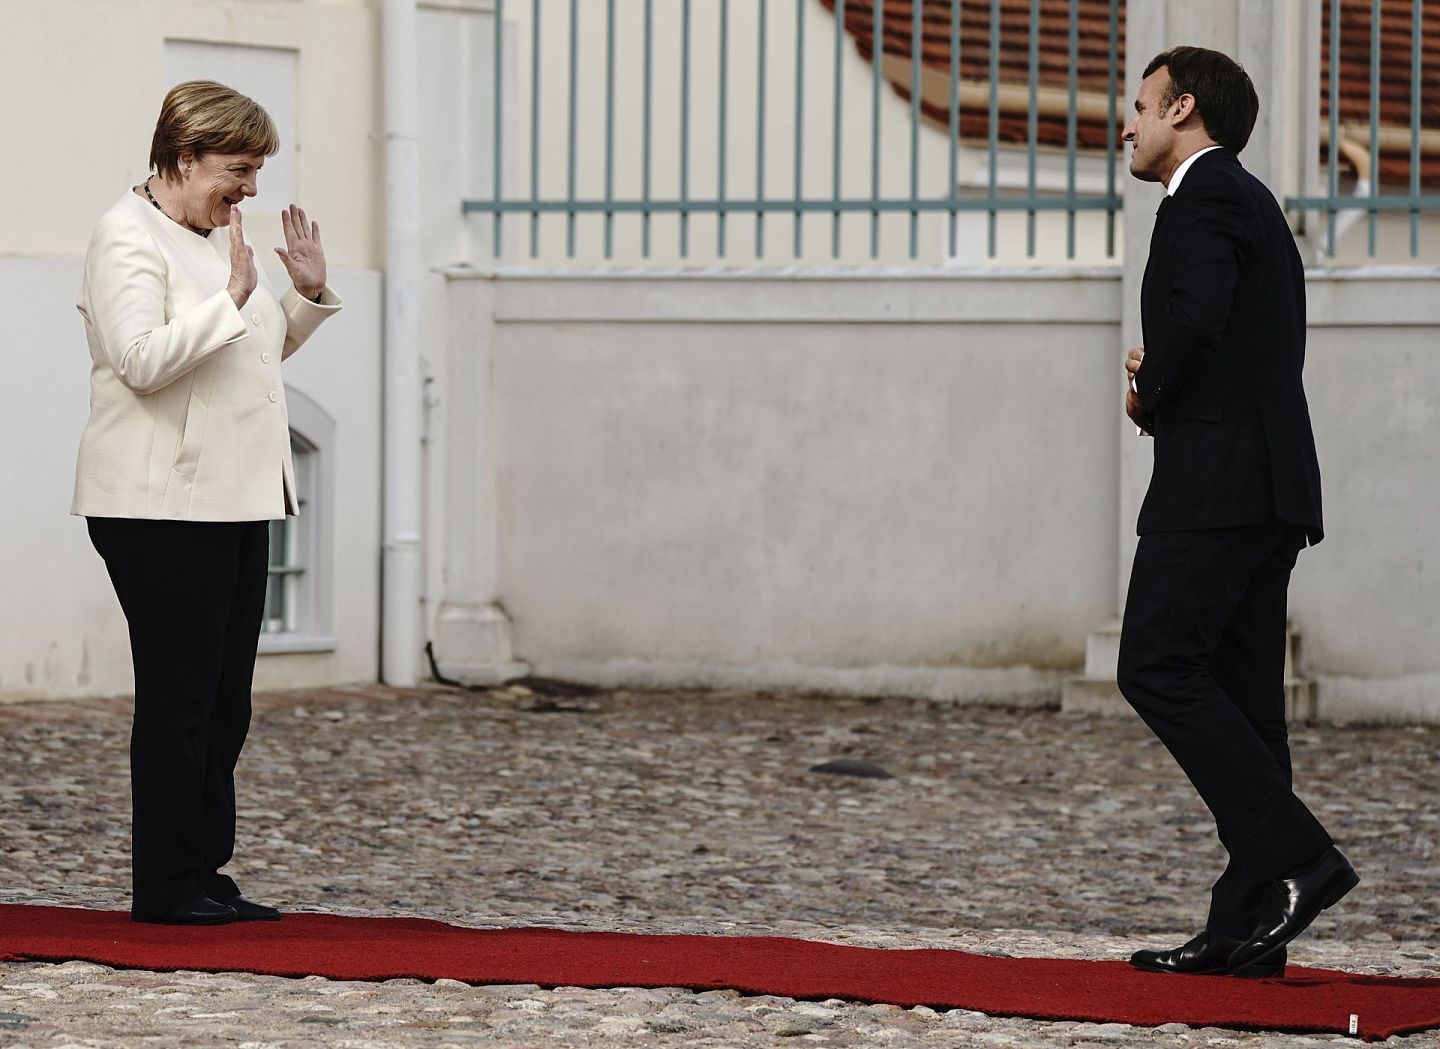 法德两国领导人在中美议题上比较谨慎，尽量避免倒向任何一方。图为2020年6月29日，德国总理默克尔（左）在梅塞伯格城堡前欢迎法国总统马克龙。（AP）